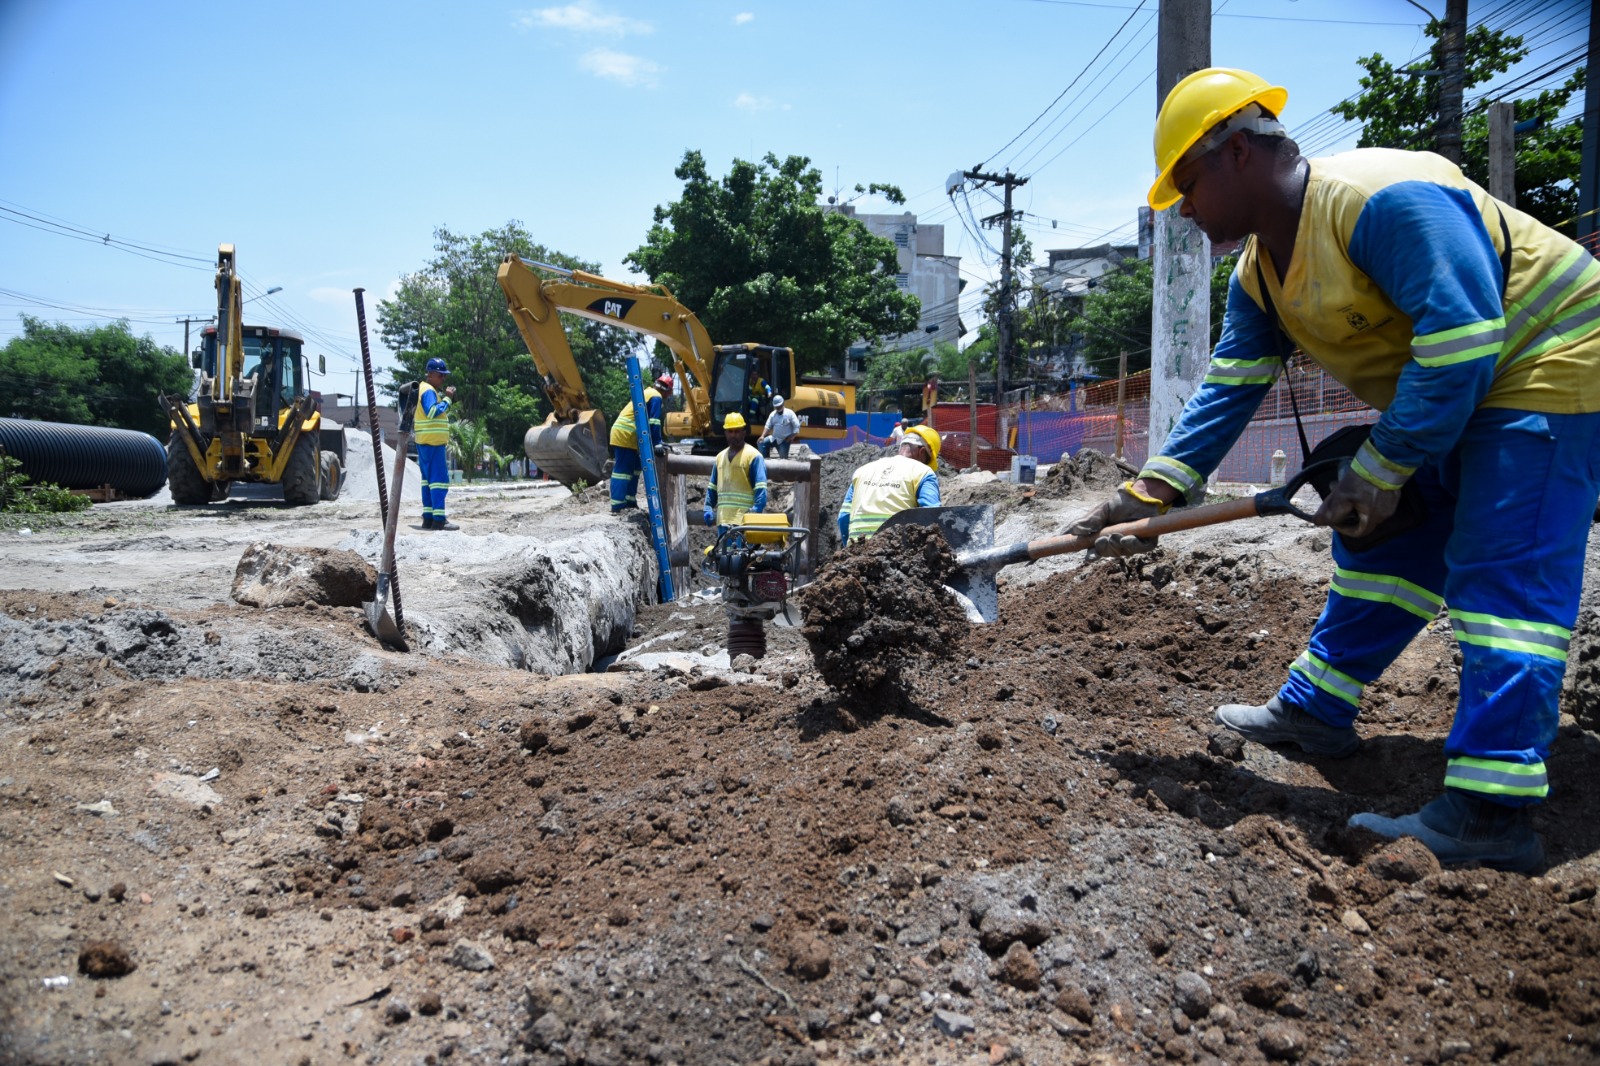 Obras do MUVI, maior projeto de mobilidade urbana de São Gonçalo, avançam na cidade